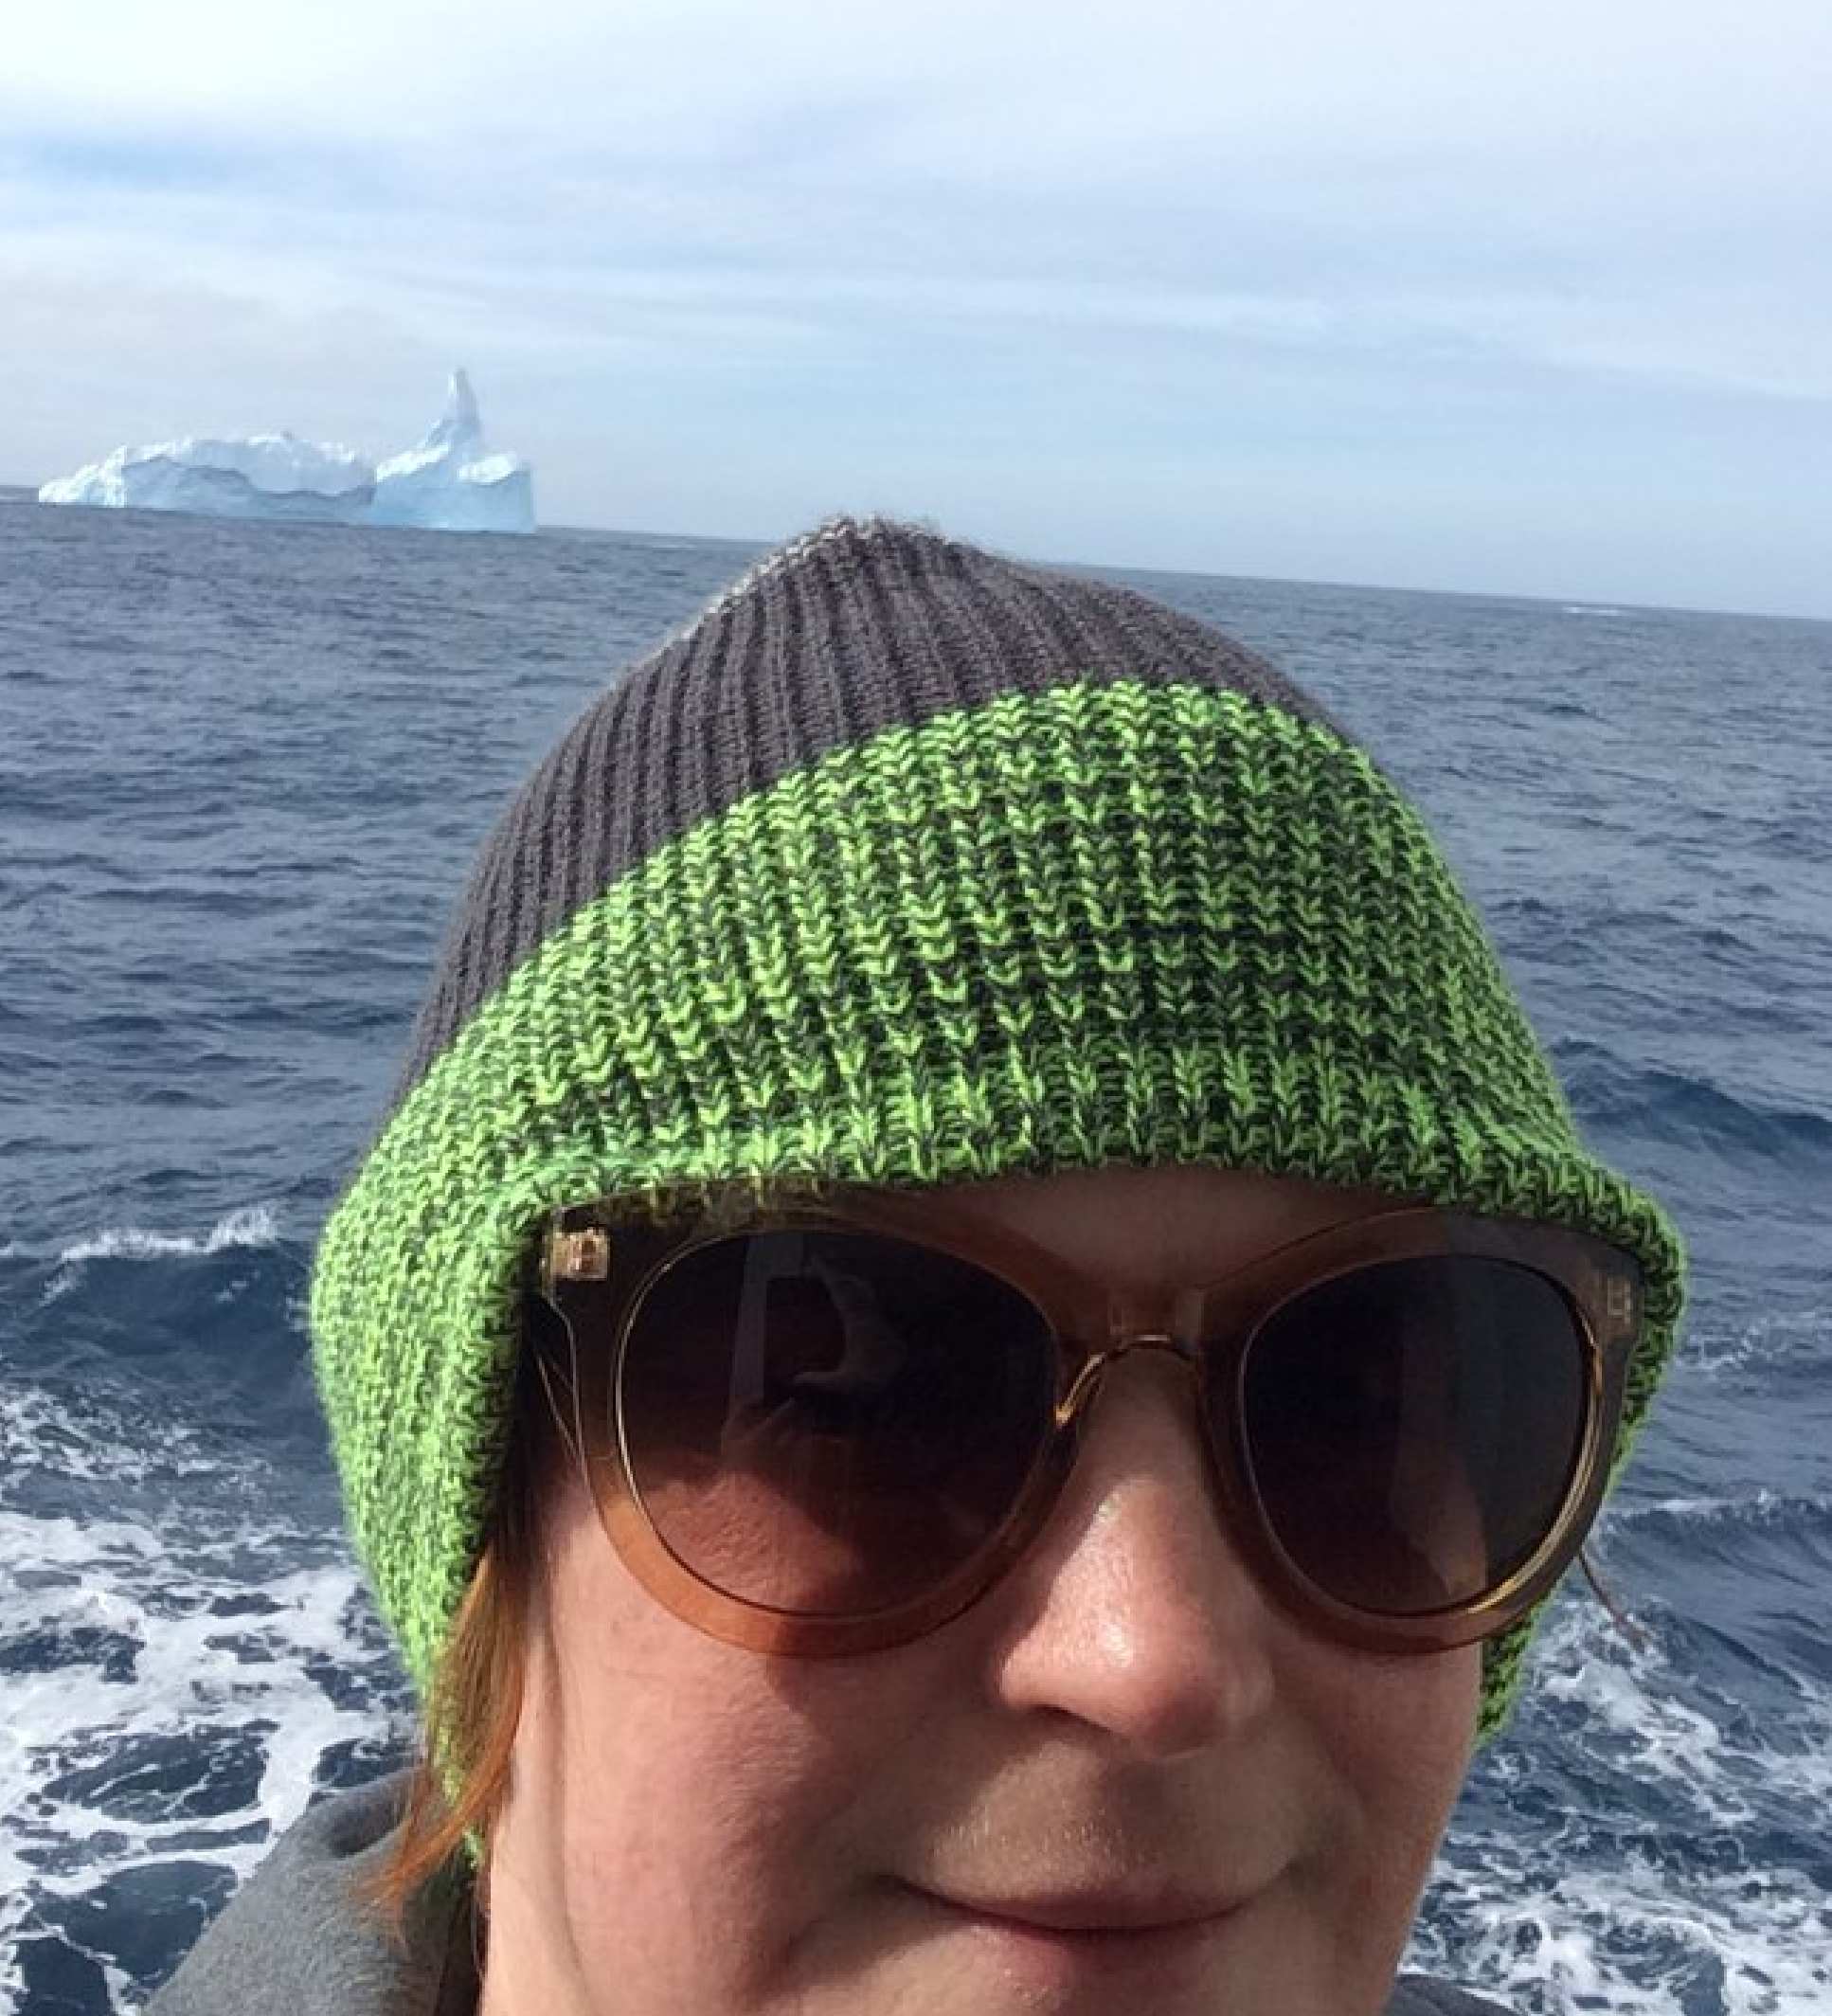 TIna van de Flierdt with iceberg in background